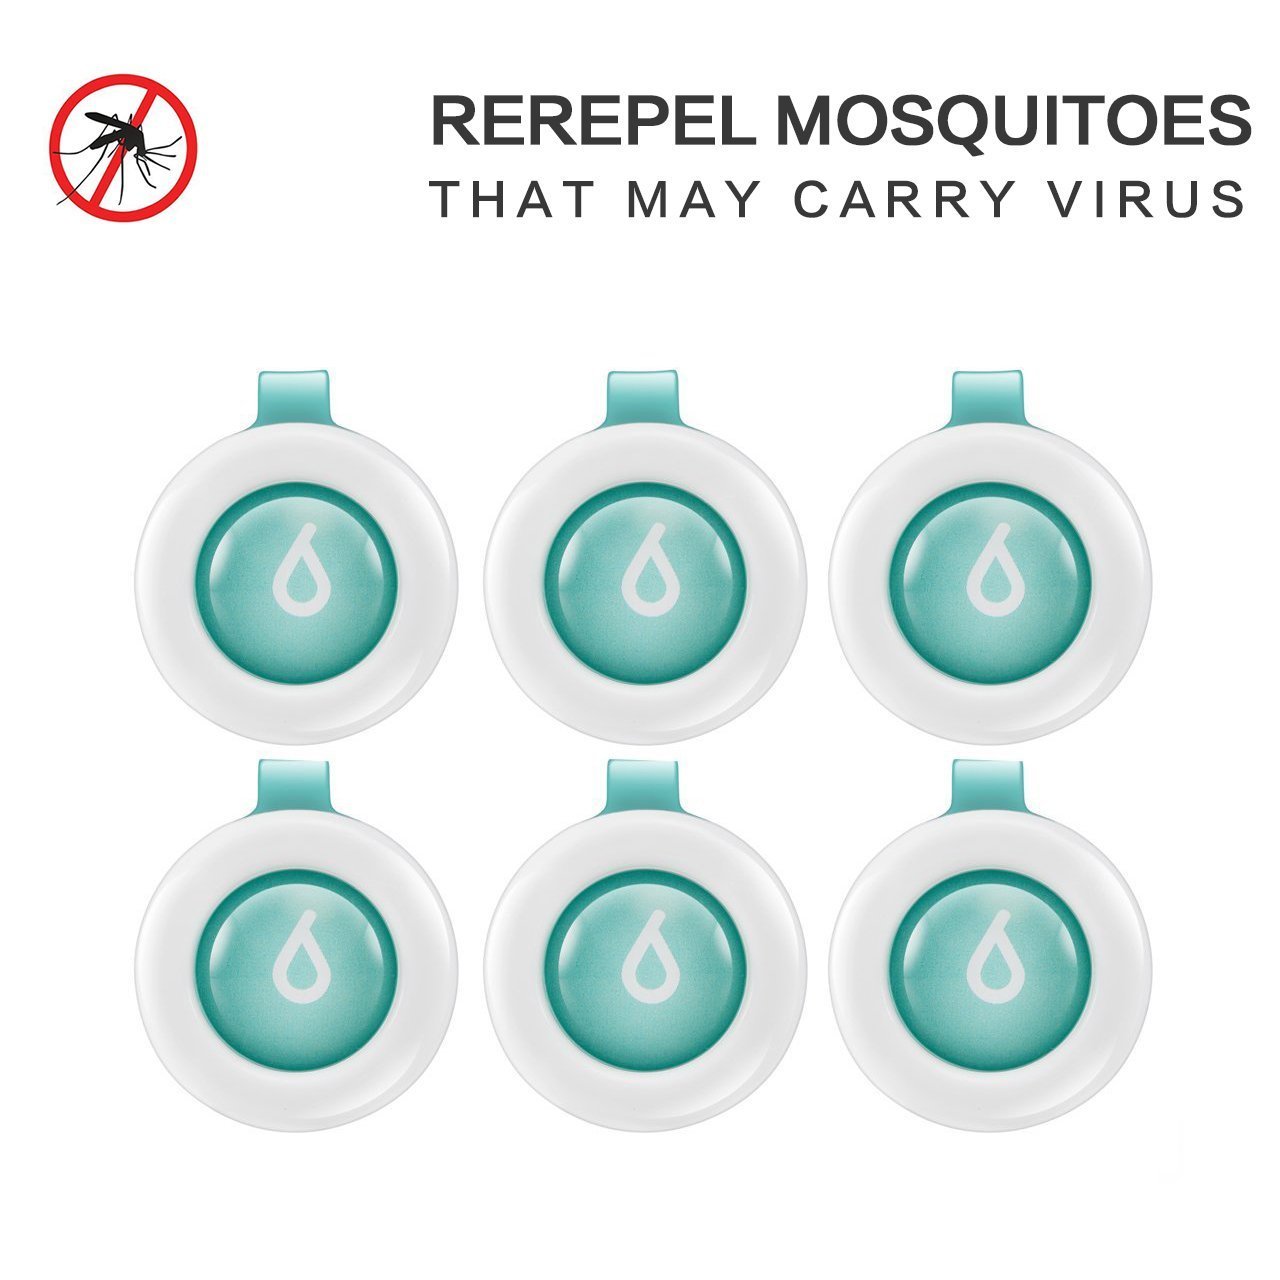 Mosteck Mückenschutz Schnalle, Insektenschutzmittel Klemme für Innenraum und Außen Wasserdicht Insekten abwehrend mit 60-Tage Schutz, kein Hautkontakt natürlich sicher für Kinder Erwachsene